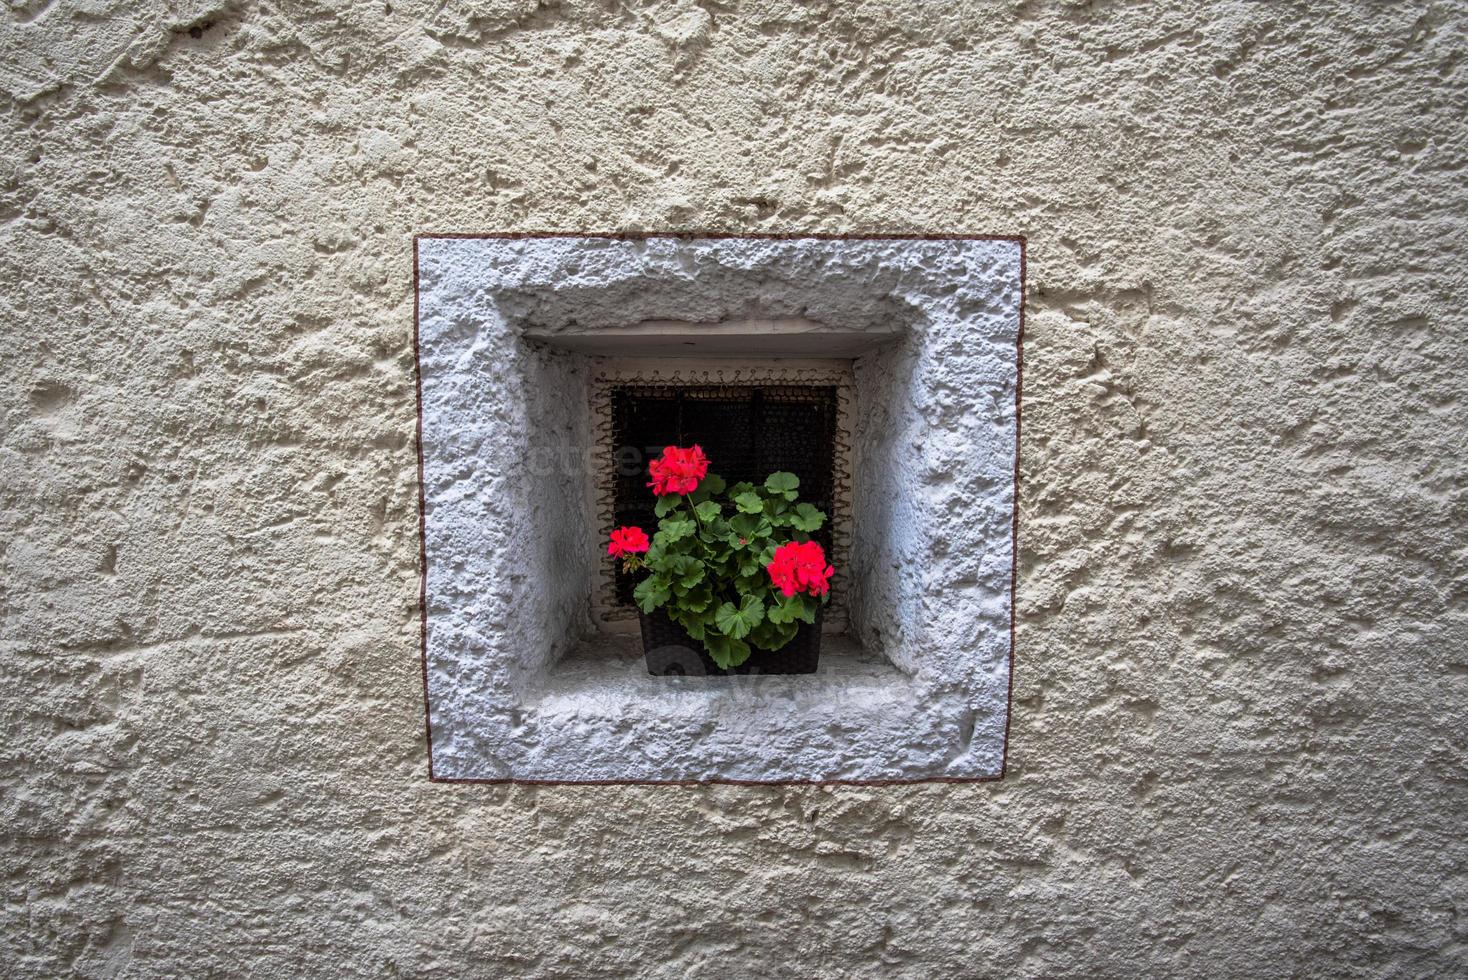 vaas met geraniums op een klein vierkant raam in san martino di castrozza, trento, italië foto